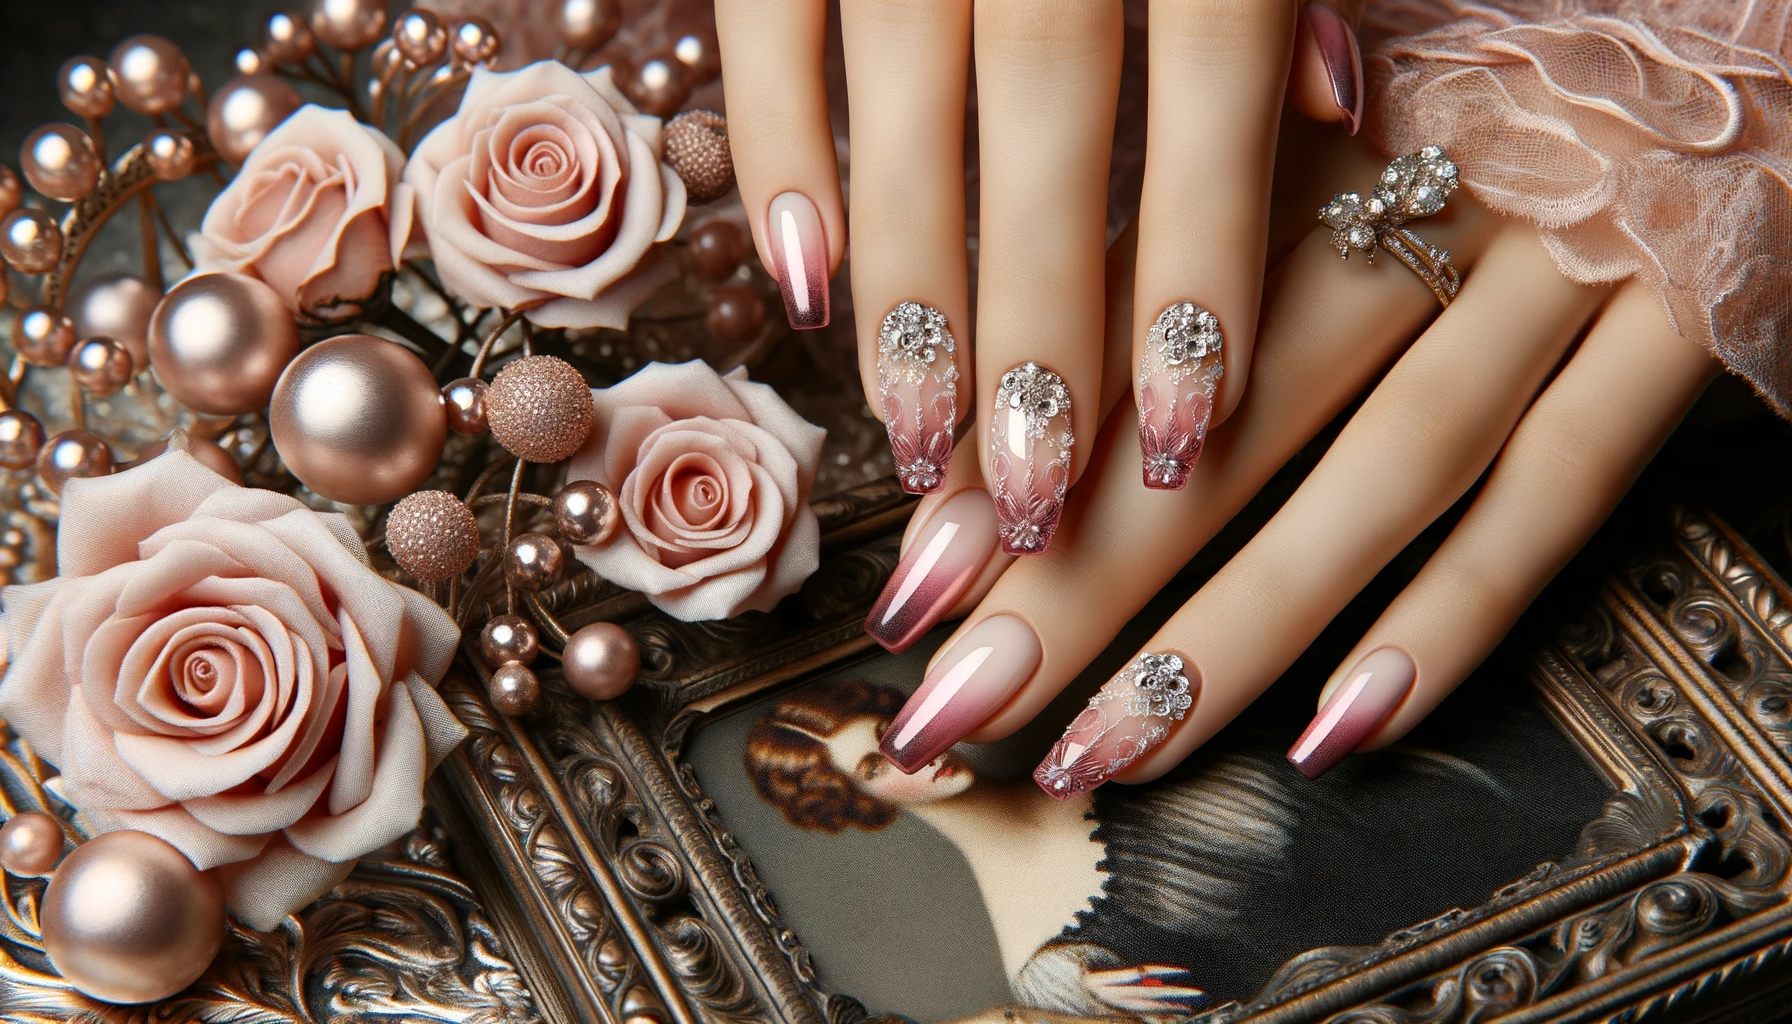 Paznokcie różowe ombre - stylizacja paznokci w modnym ombre na paznokciach